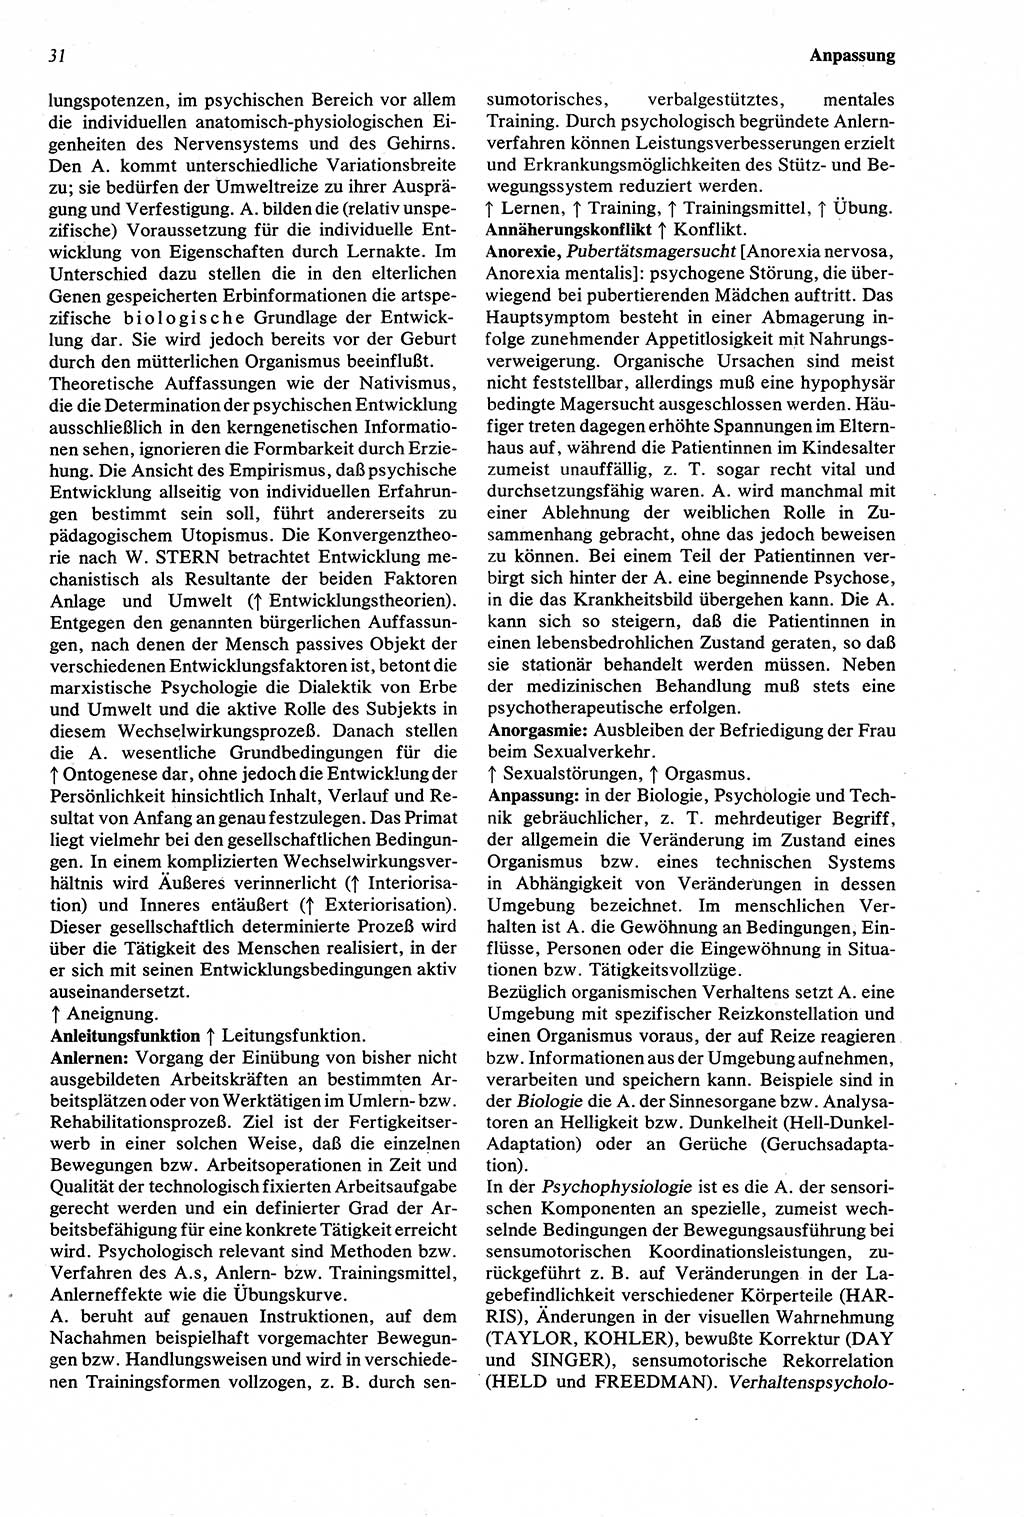 Wörterbuch der Psychologie [Deutsche Demokratische Republik (DDR)] 1976, Seite 31 (Wb. Psych. DDR 1976, S. 31)